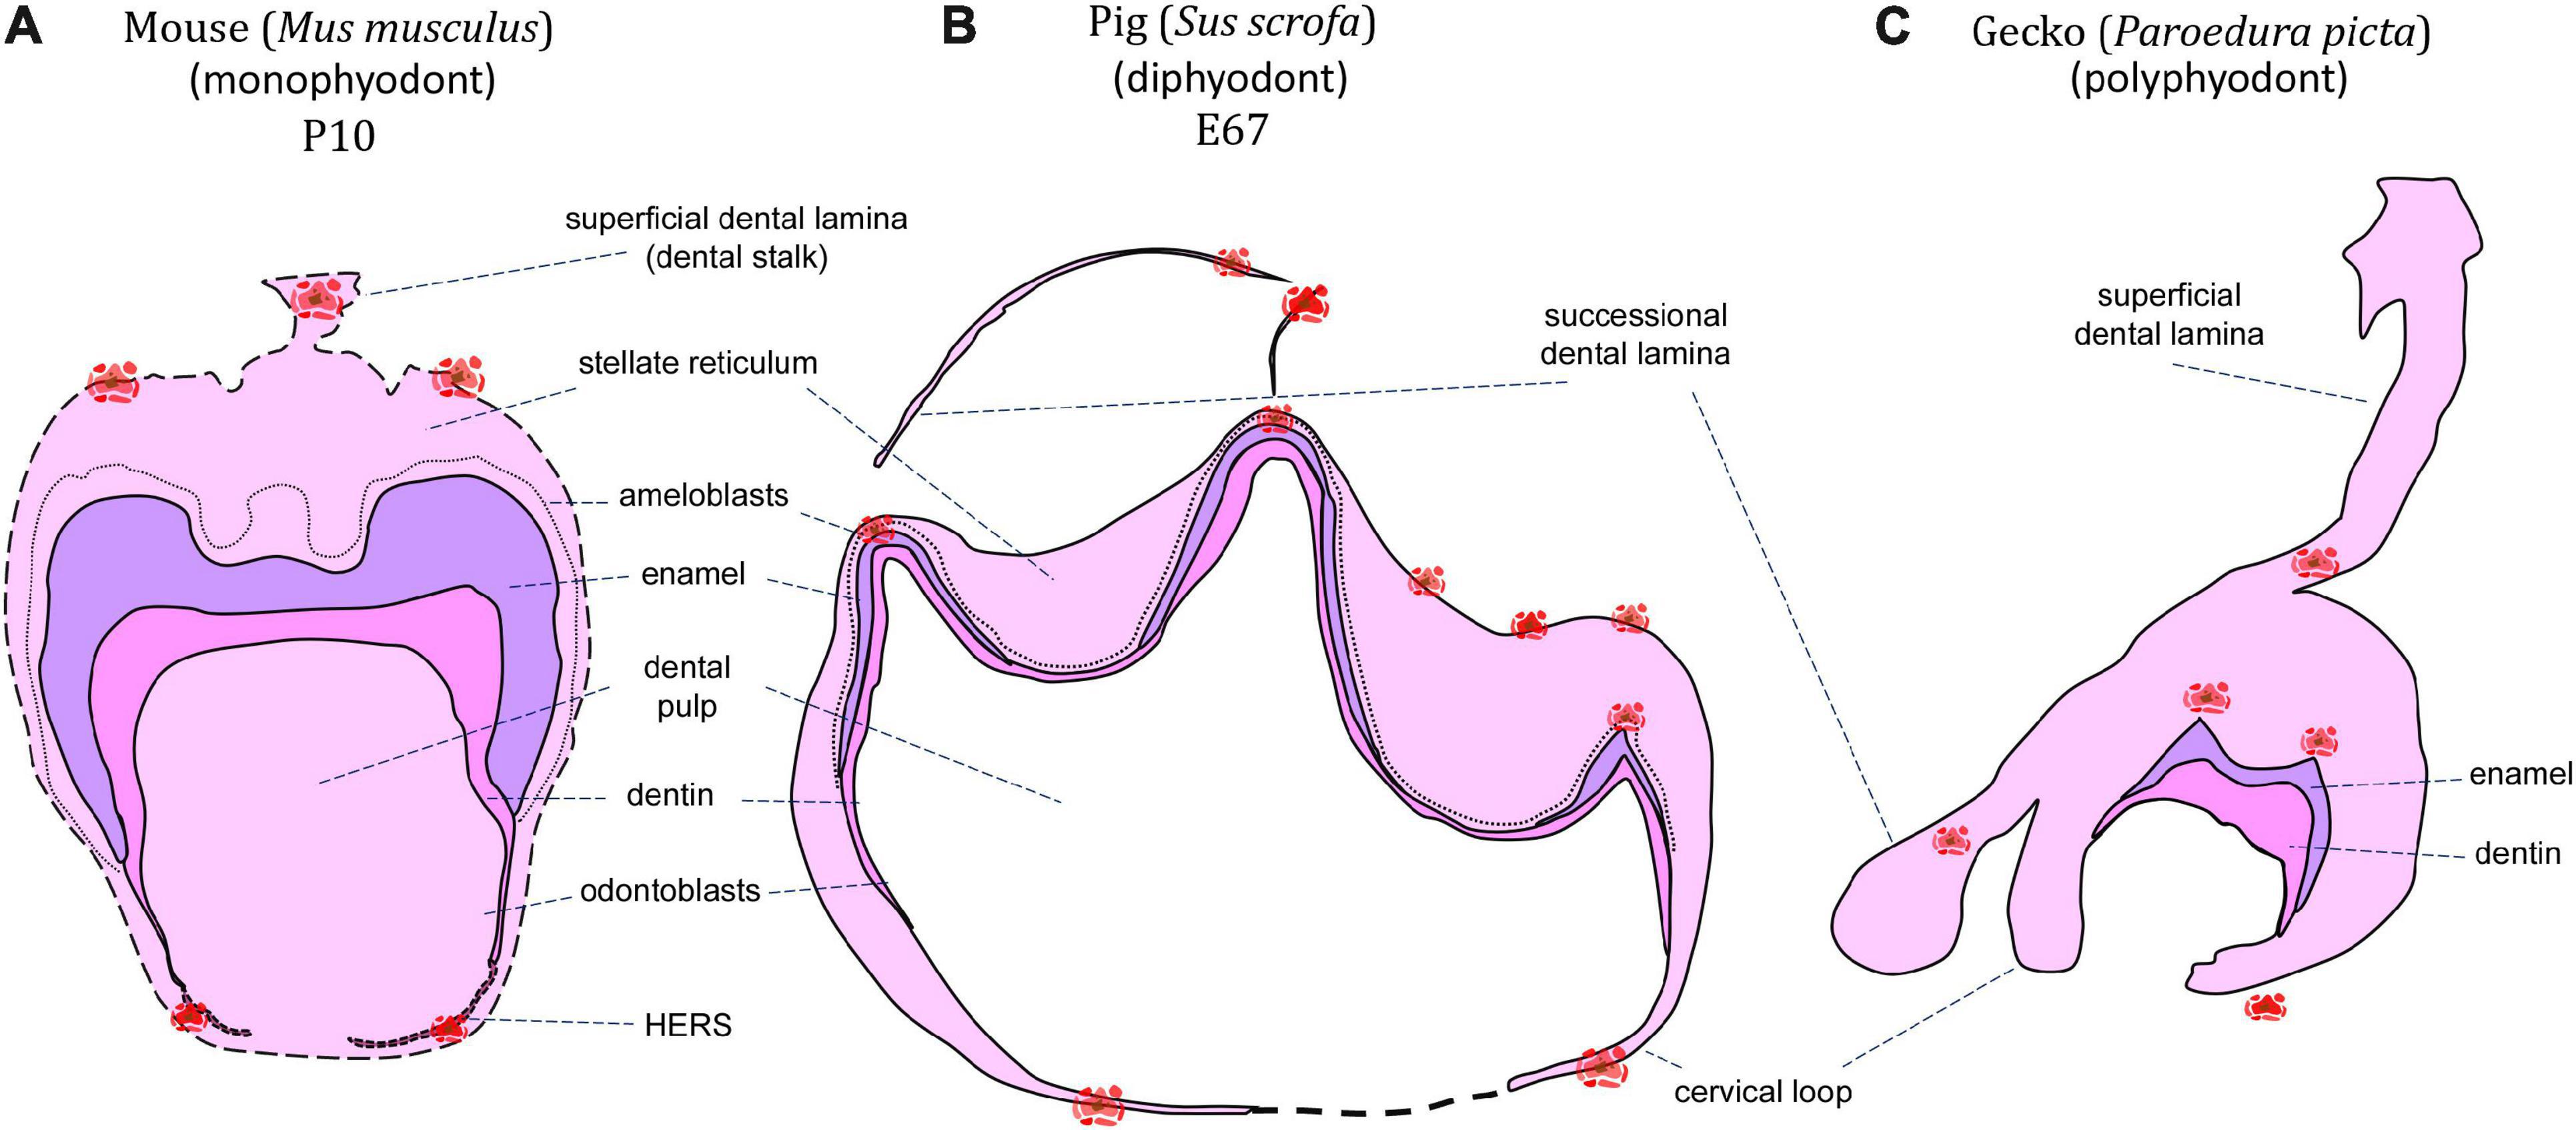 Oral epithelium differentiates into four types of dental epithelium